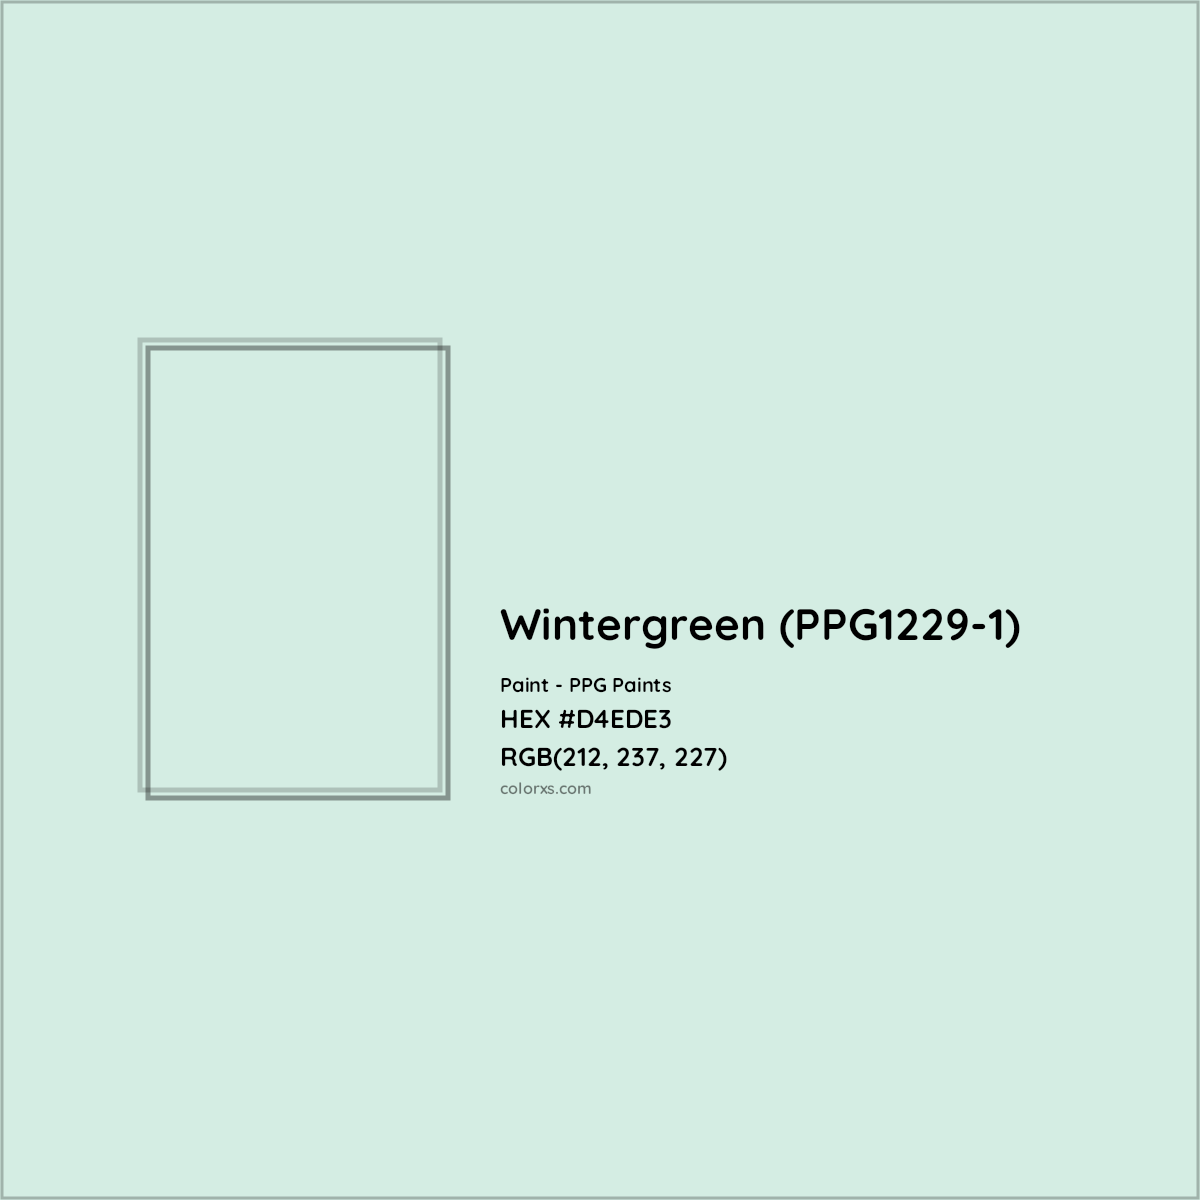 HEX #D4EDE3 Wintergreen (PPG1229-1) Paint PPG Paints - Color Code